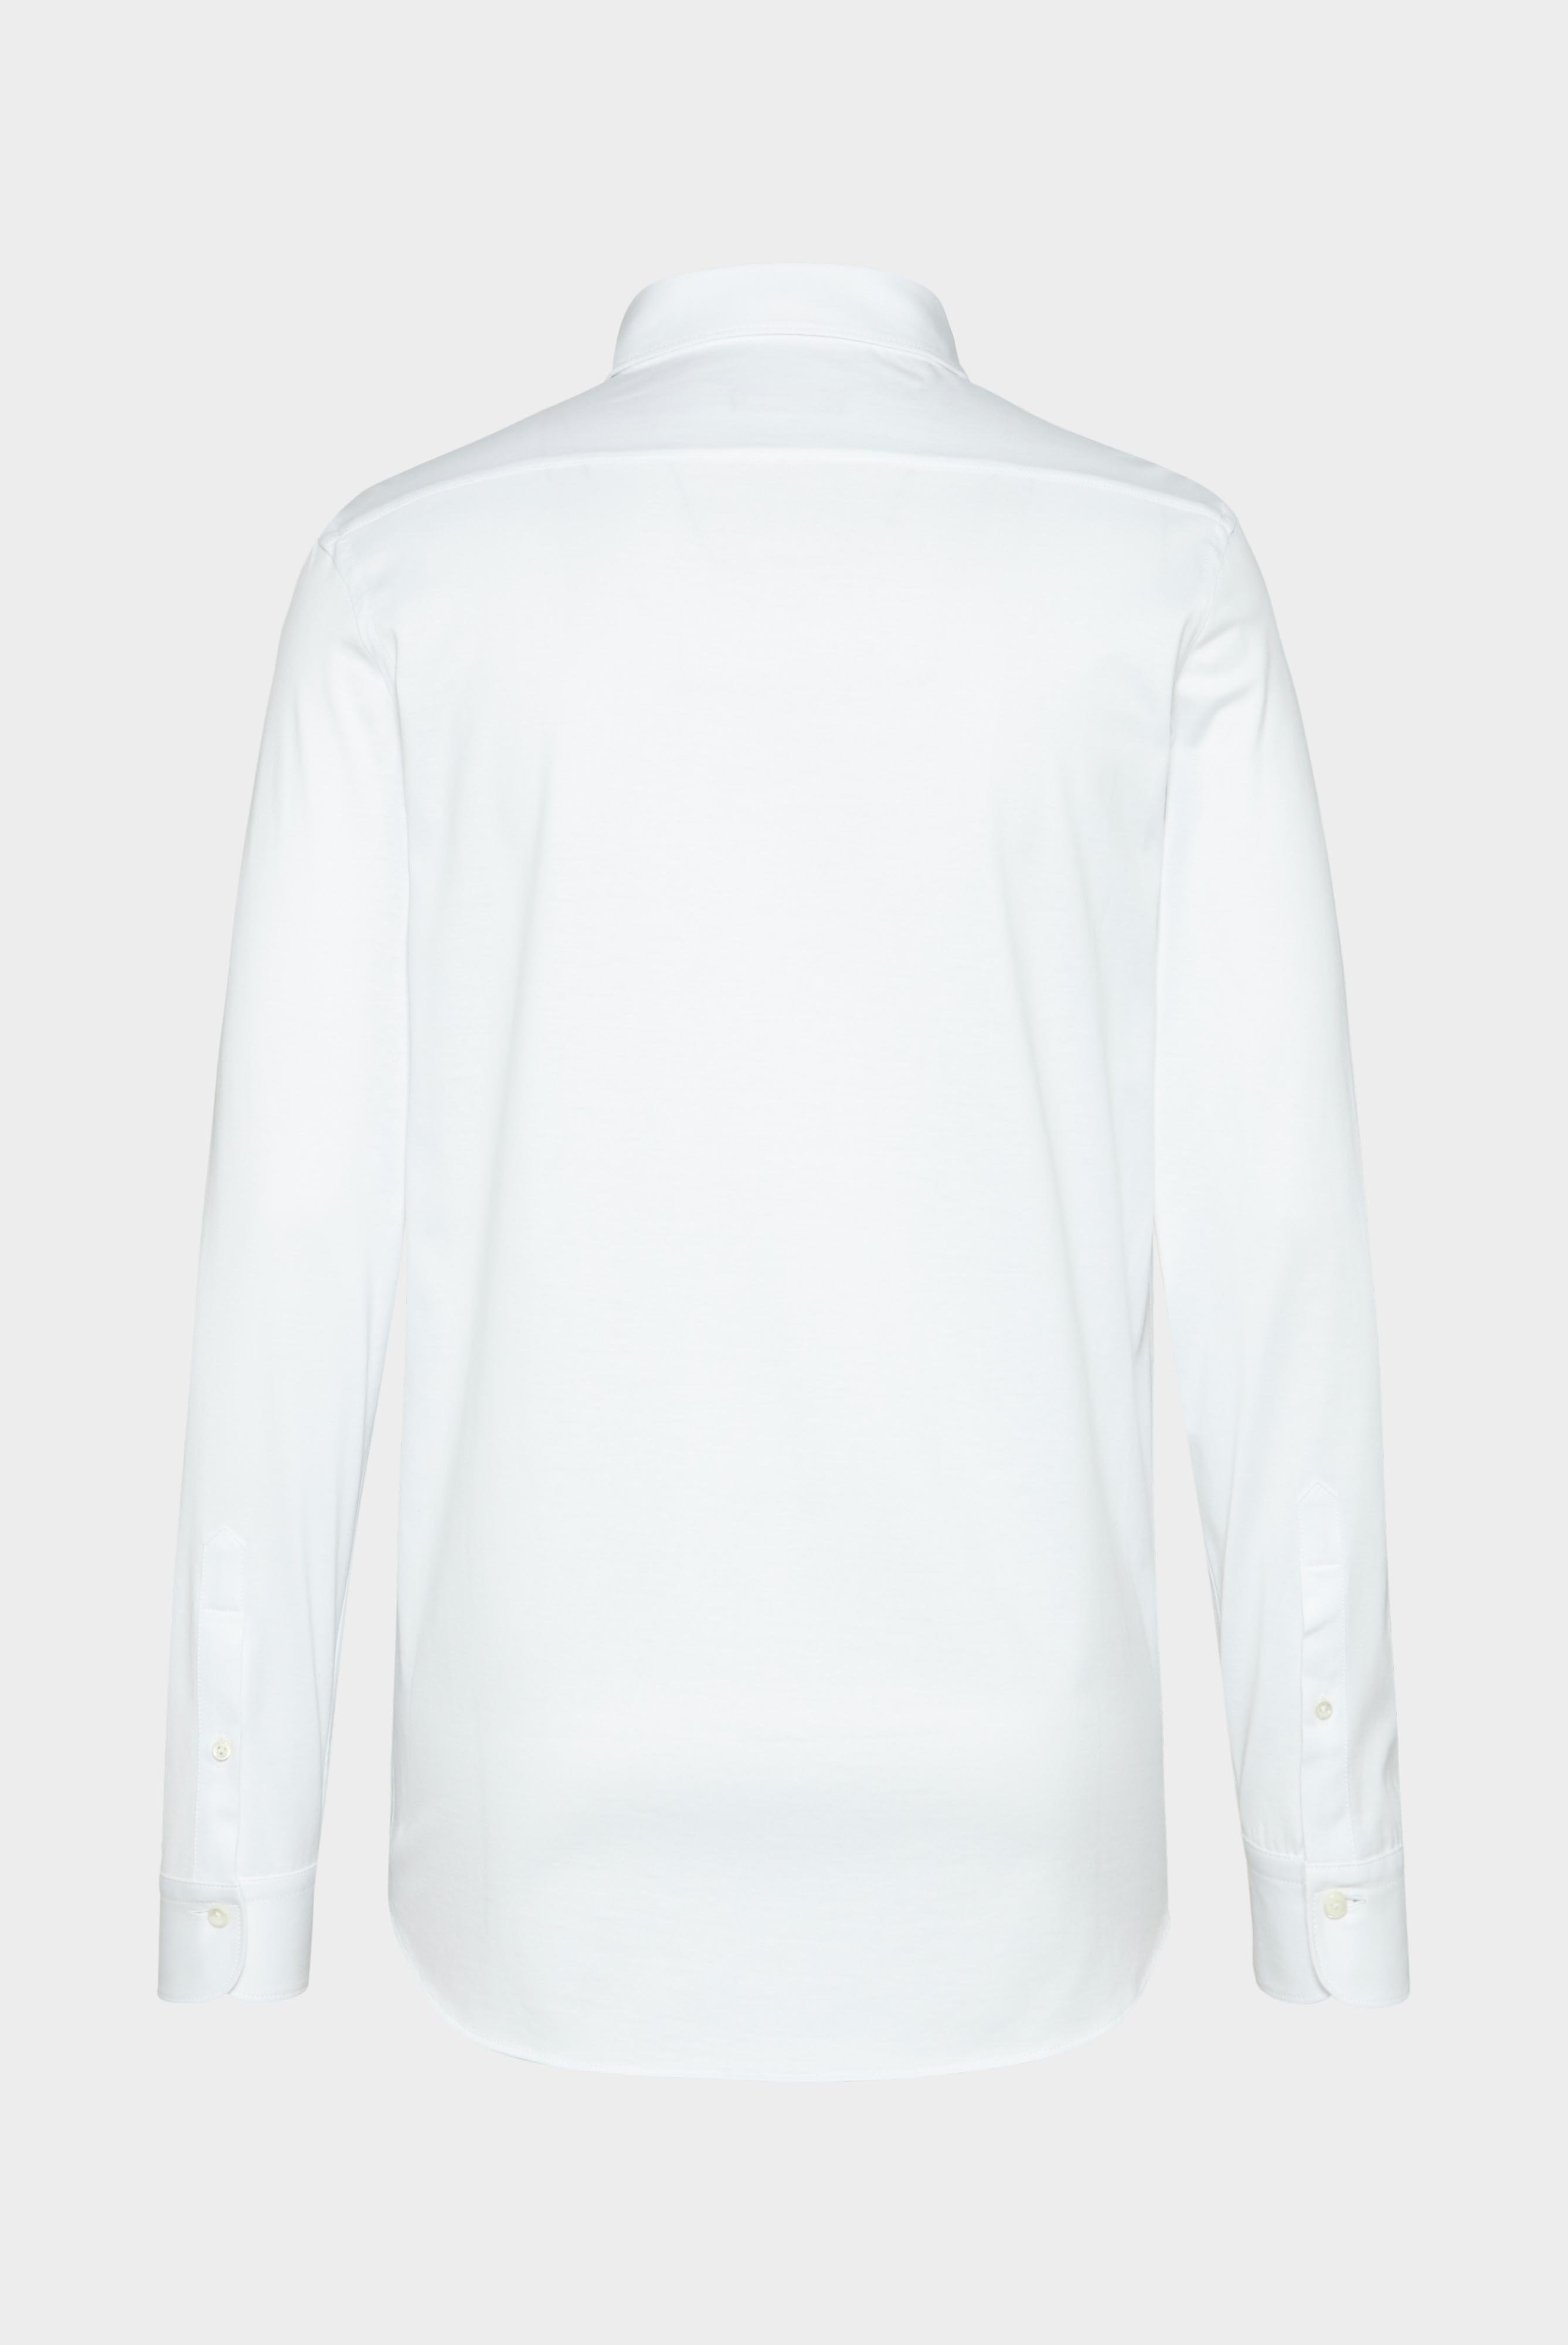 Jersey Hemden+Jersey Shirt Urban Look Slim Fit+20.1651.UC.Z20044.000.S